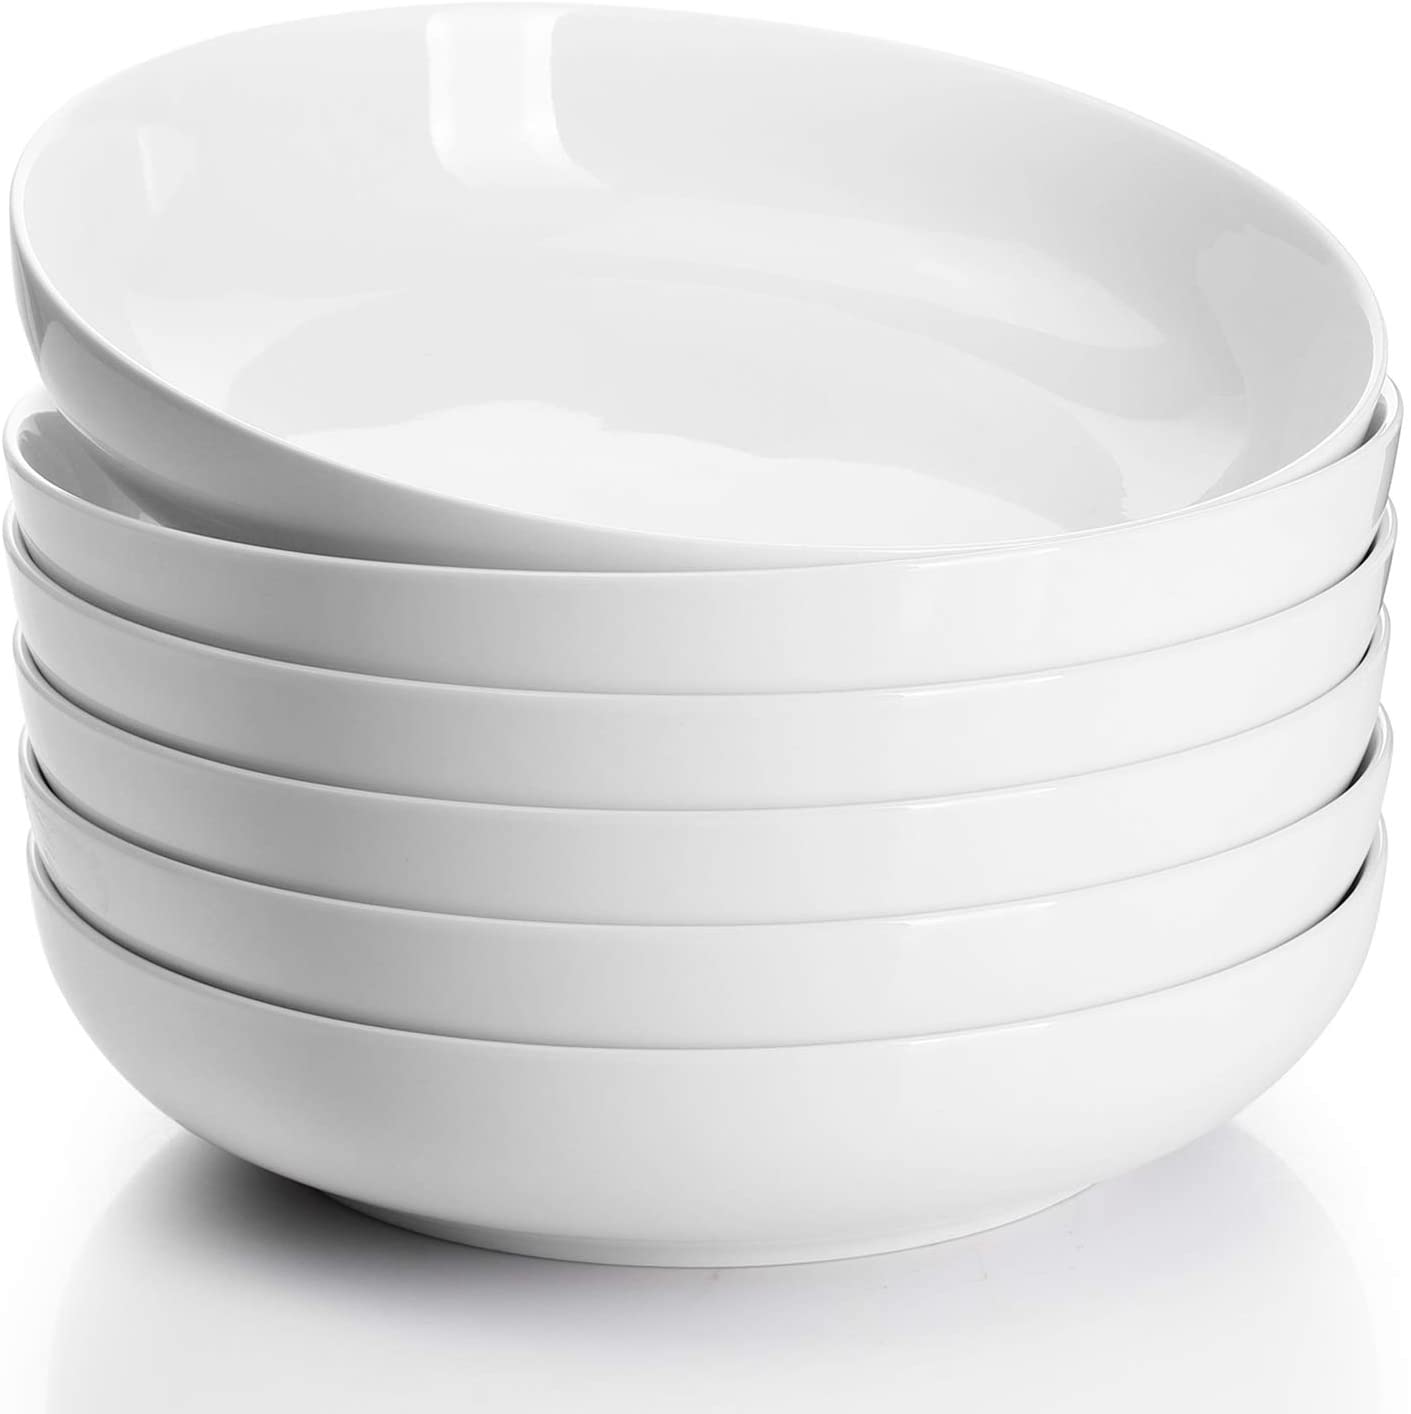 Sweese Porcelain Salad/Pasta Bowls - Set of 6